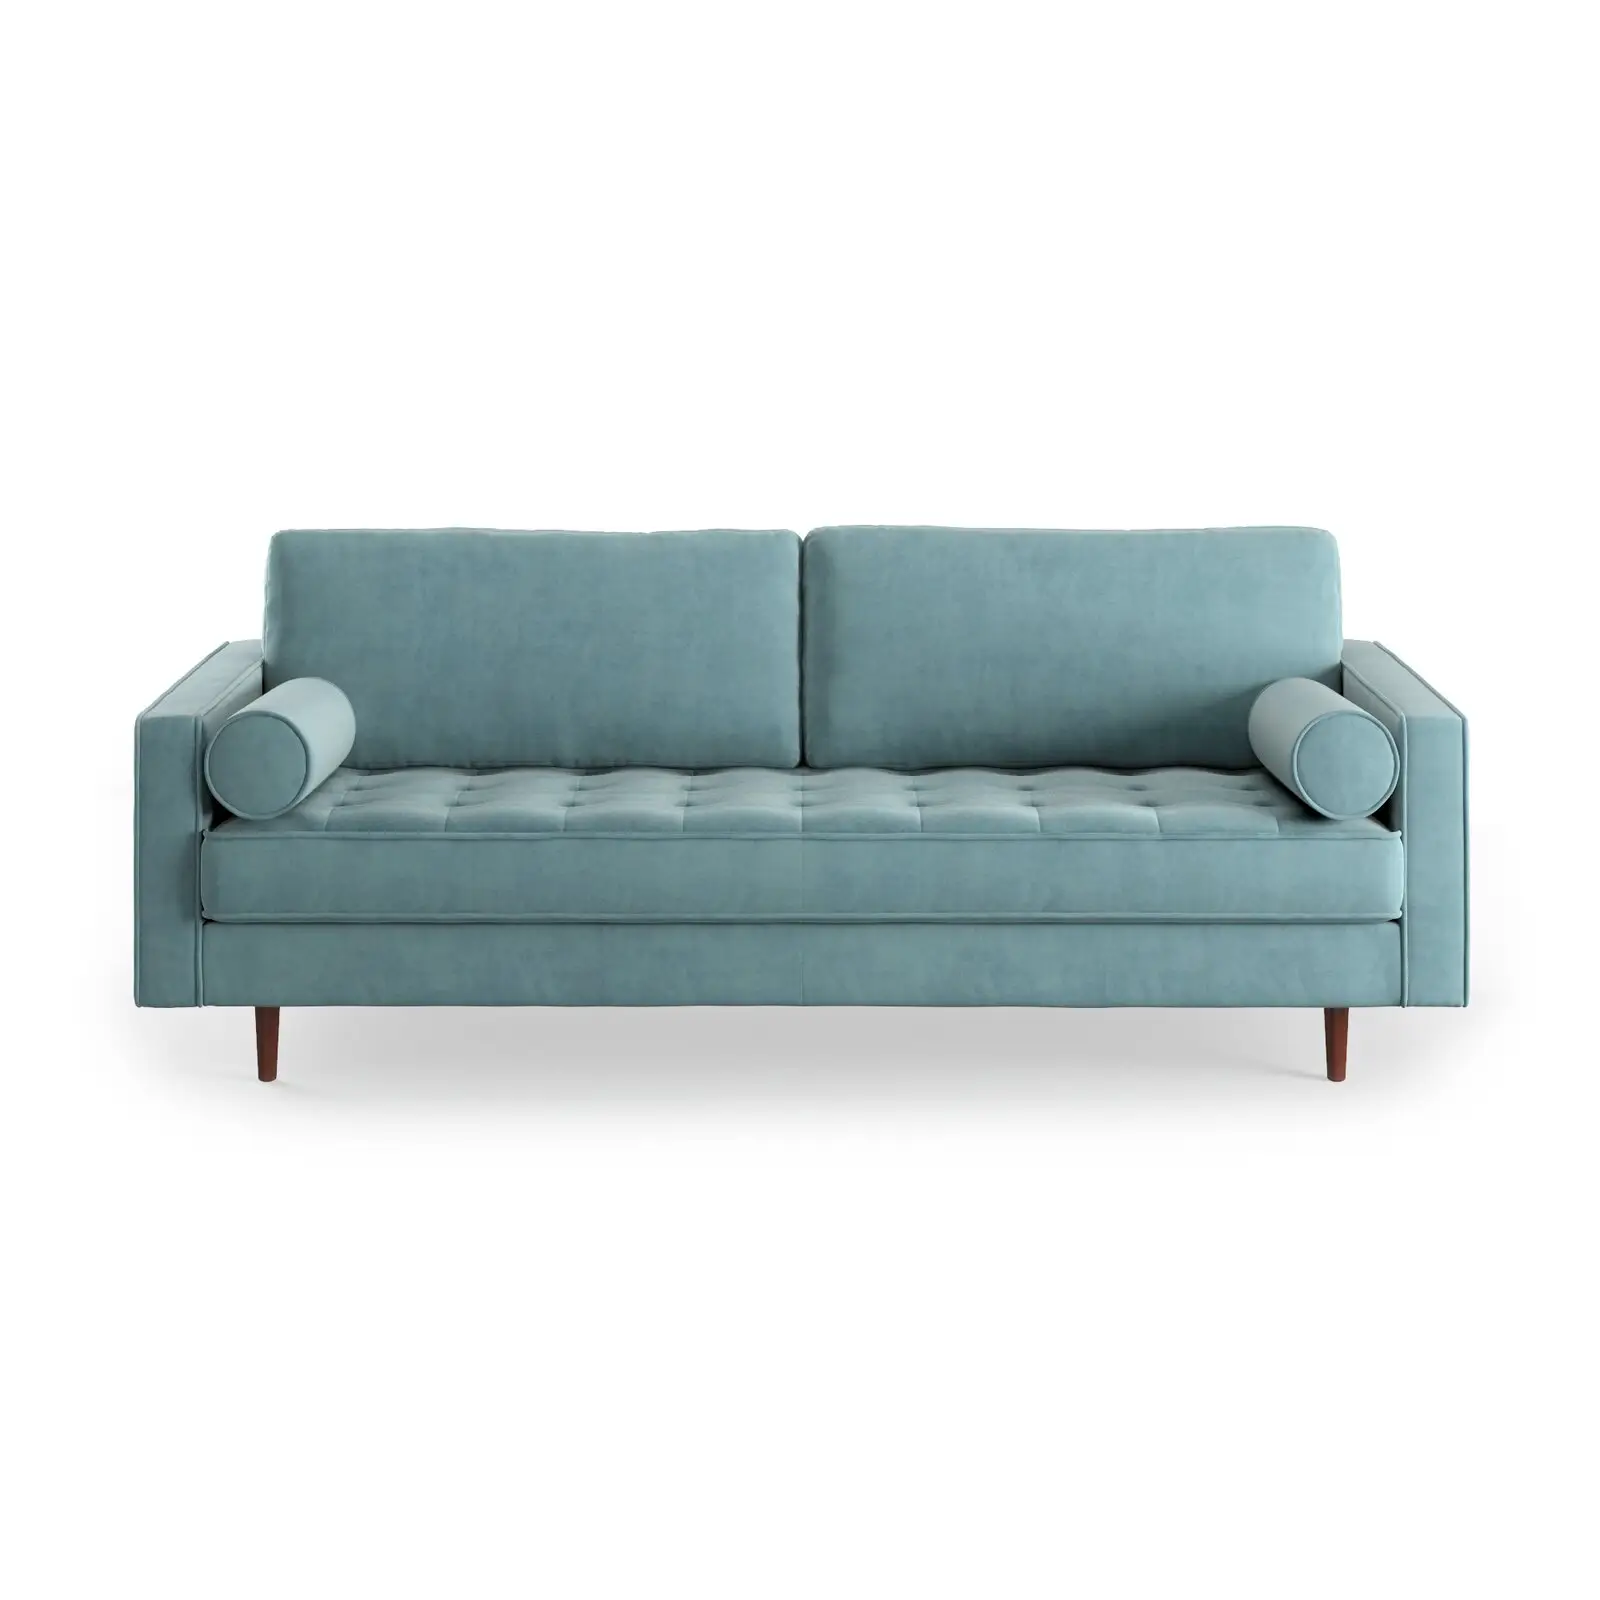 ثلاثة مقعد أضعاف الأزرق الأخضر المخملية منجد أريكة نوم السرير آلية الفاخرة السعر المنخفض أريكة وظيفية كاما